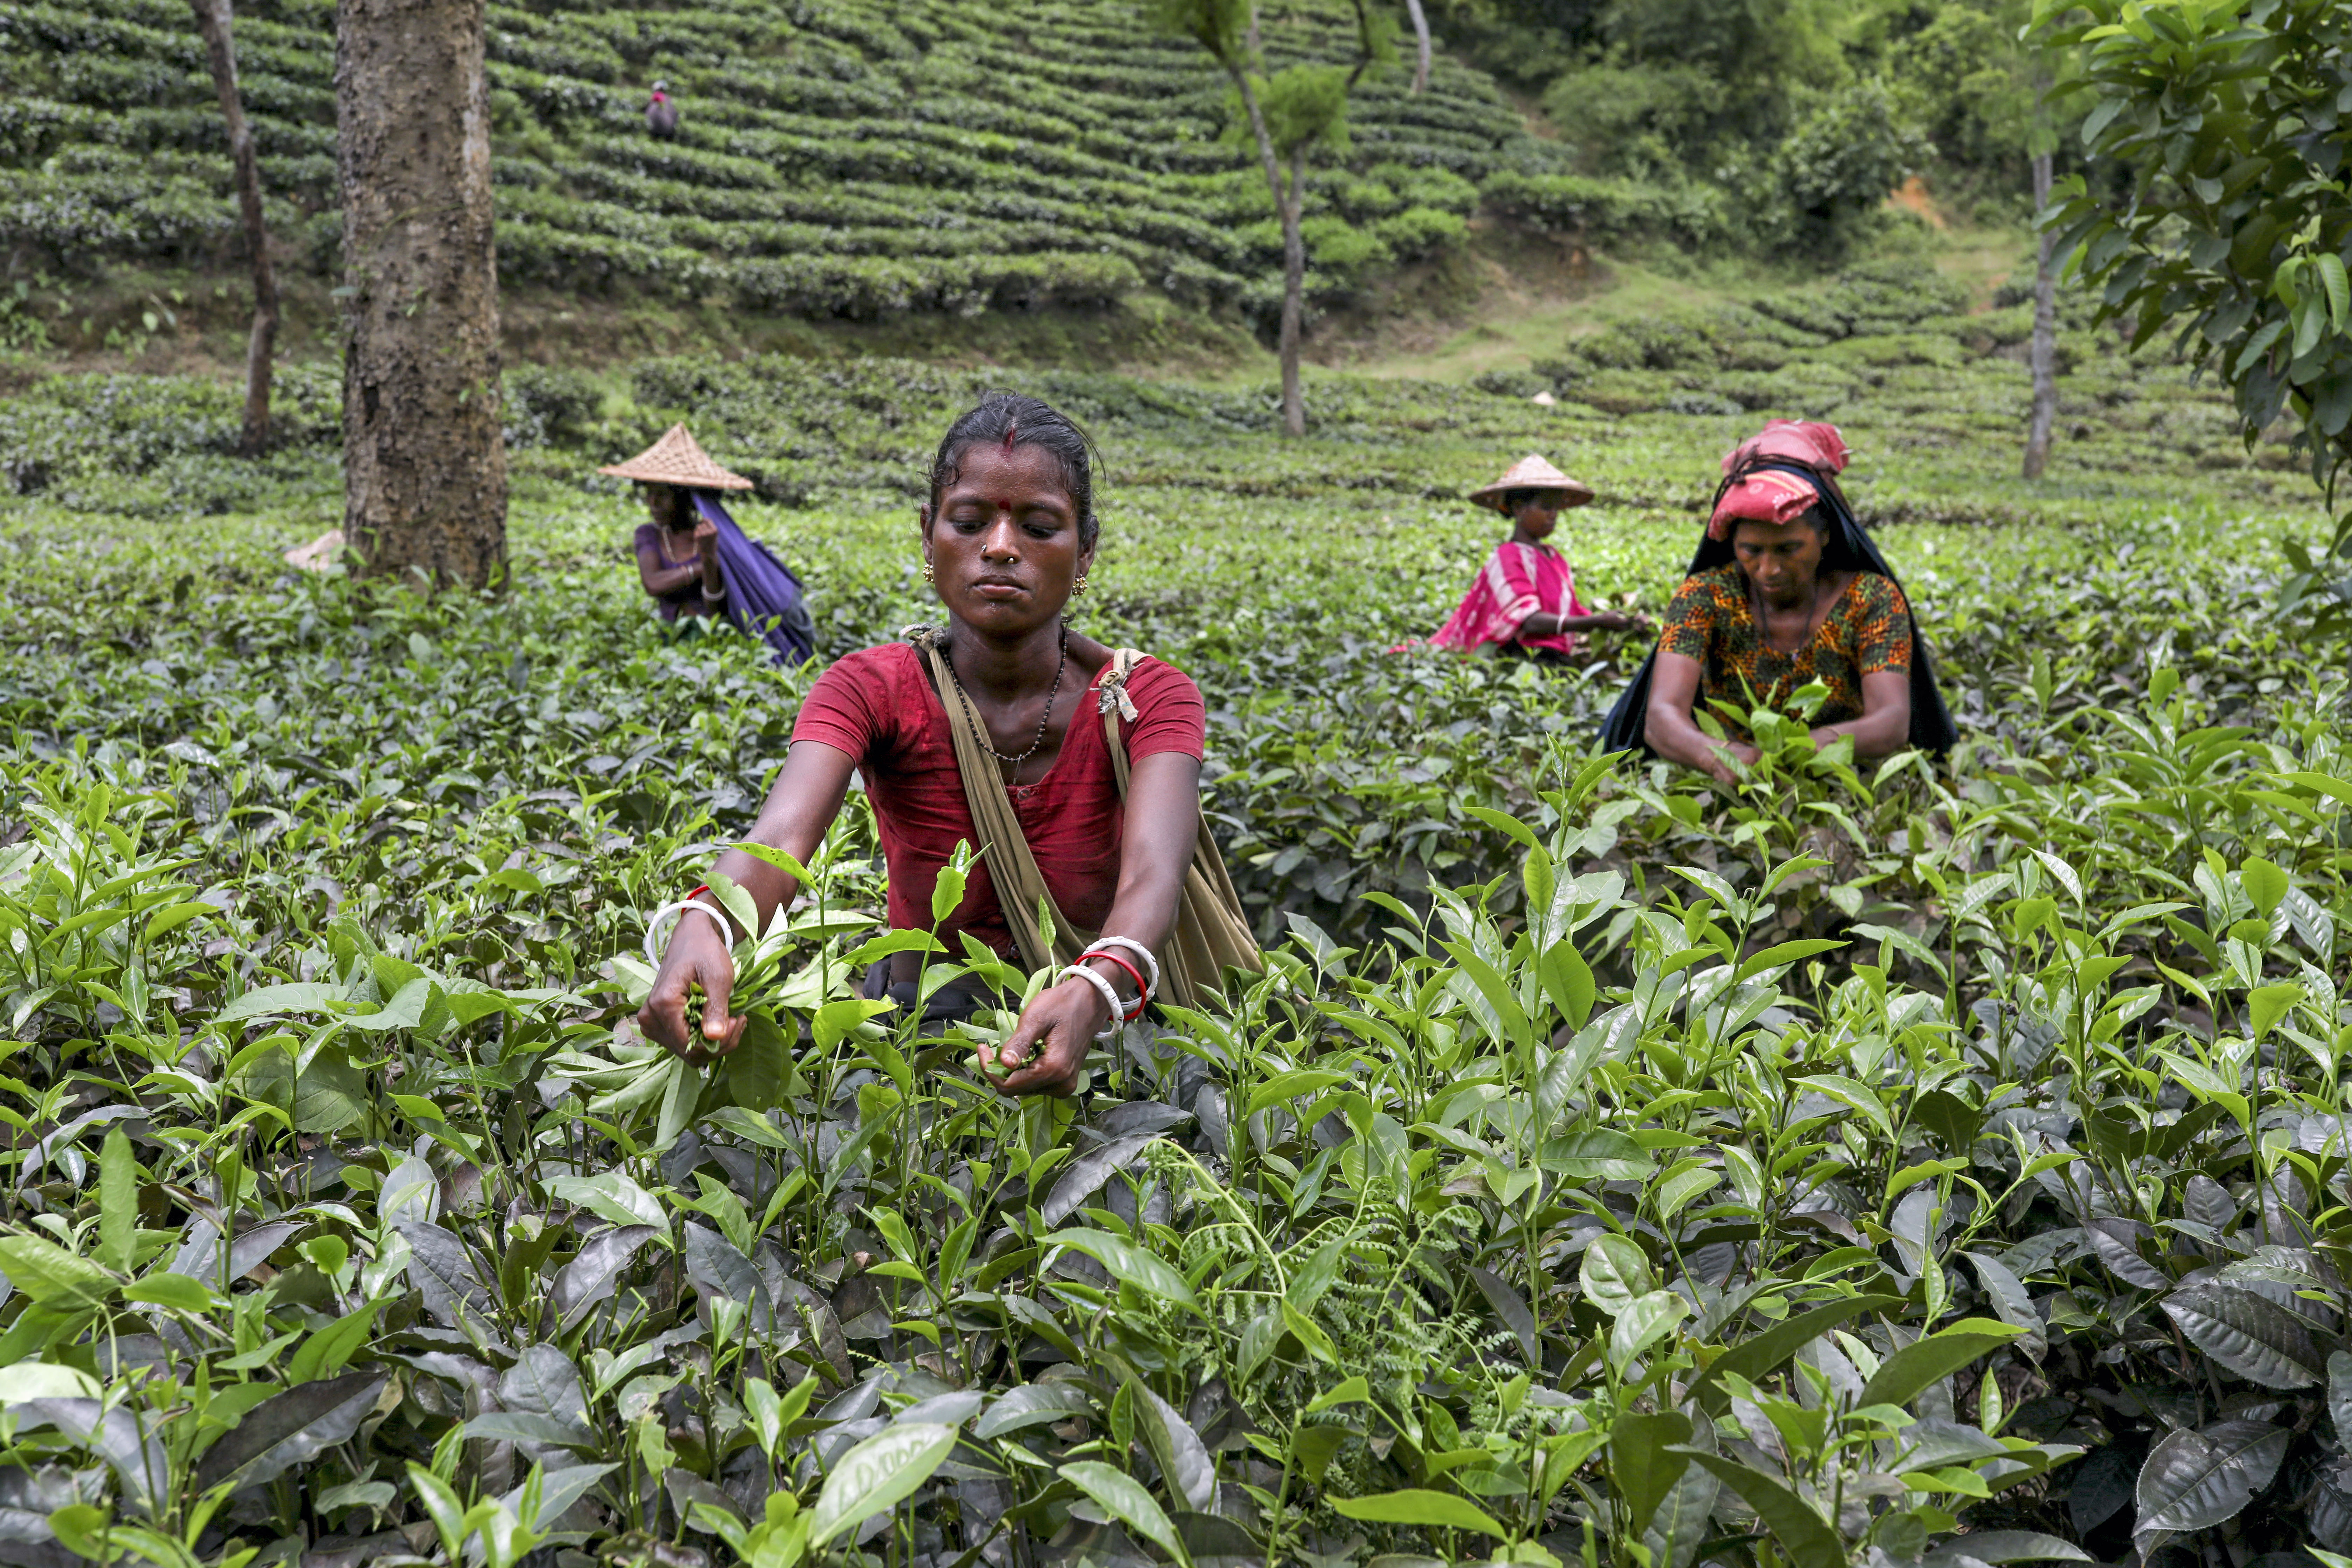 Tealevelet szedő nők Bangladesben. A Sylhet környéki teaültetvényeken 300 000 embert dolgoztatnak, többségében nőket, akik rabszolgaként tengetik életüket.